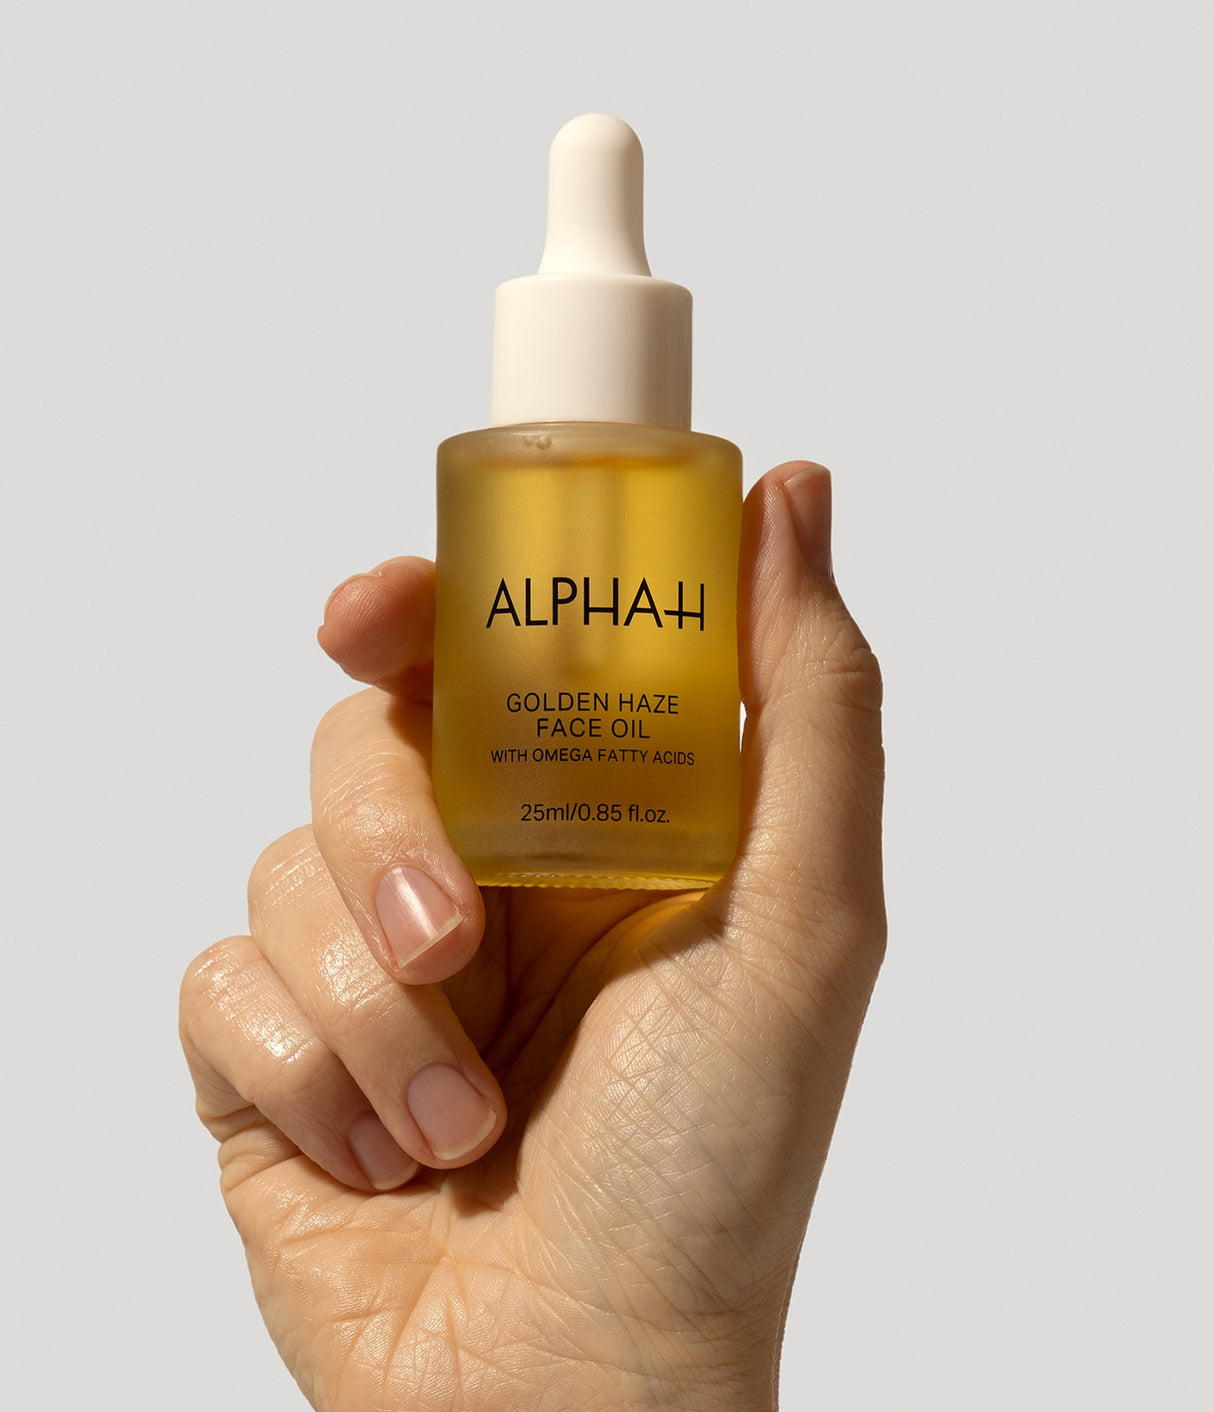 Golden Haze Face Oil de Alpha-H